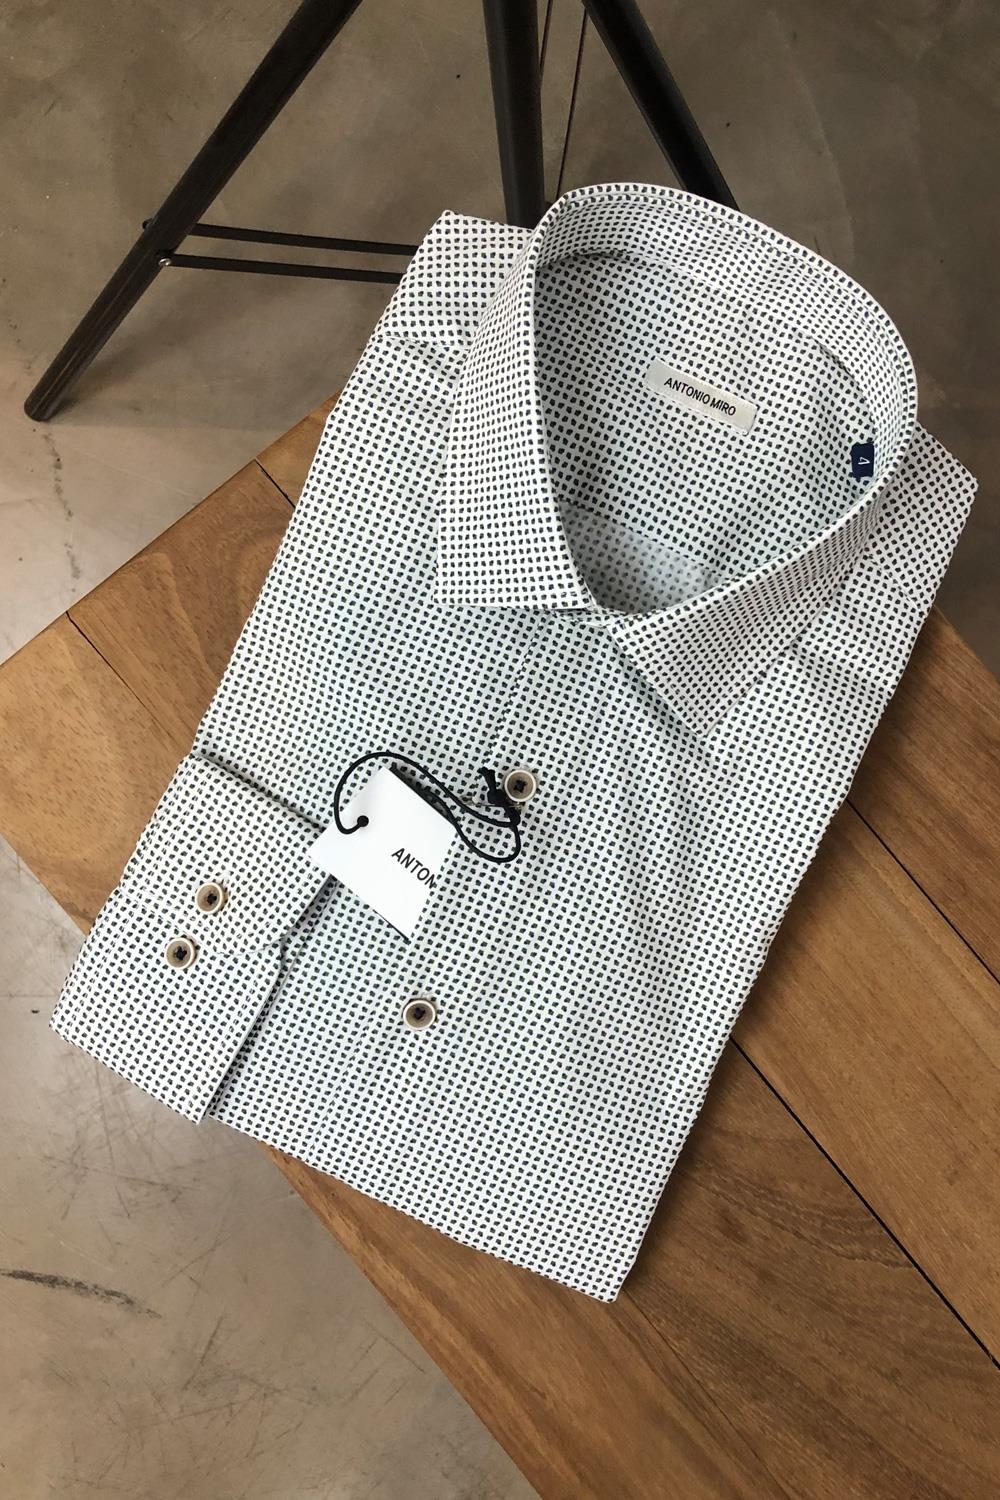 Camisa algodón 100% blanca microdibujo azul vestir | 3987